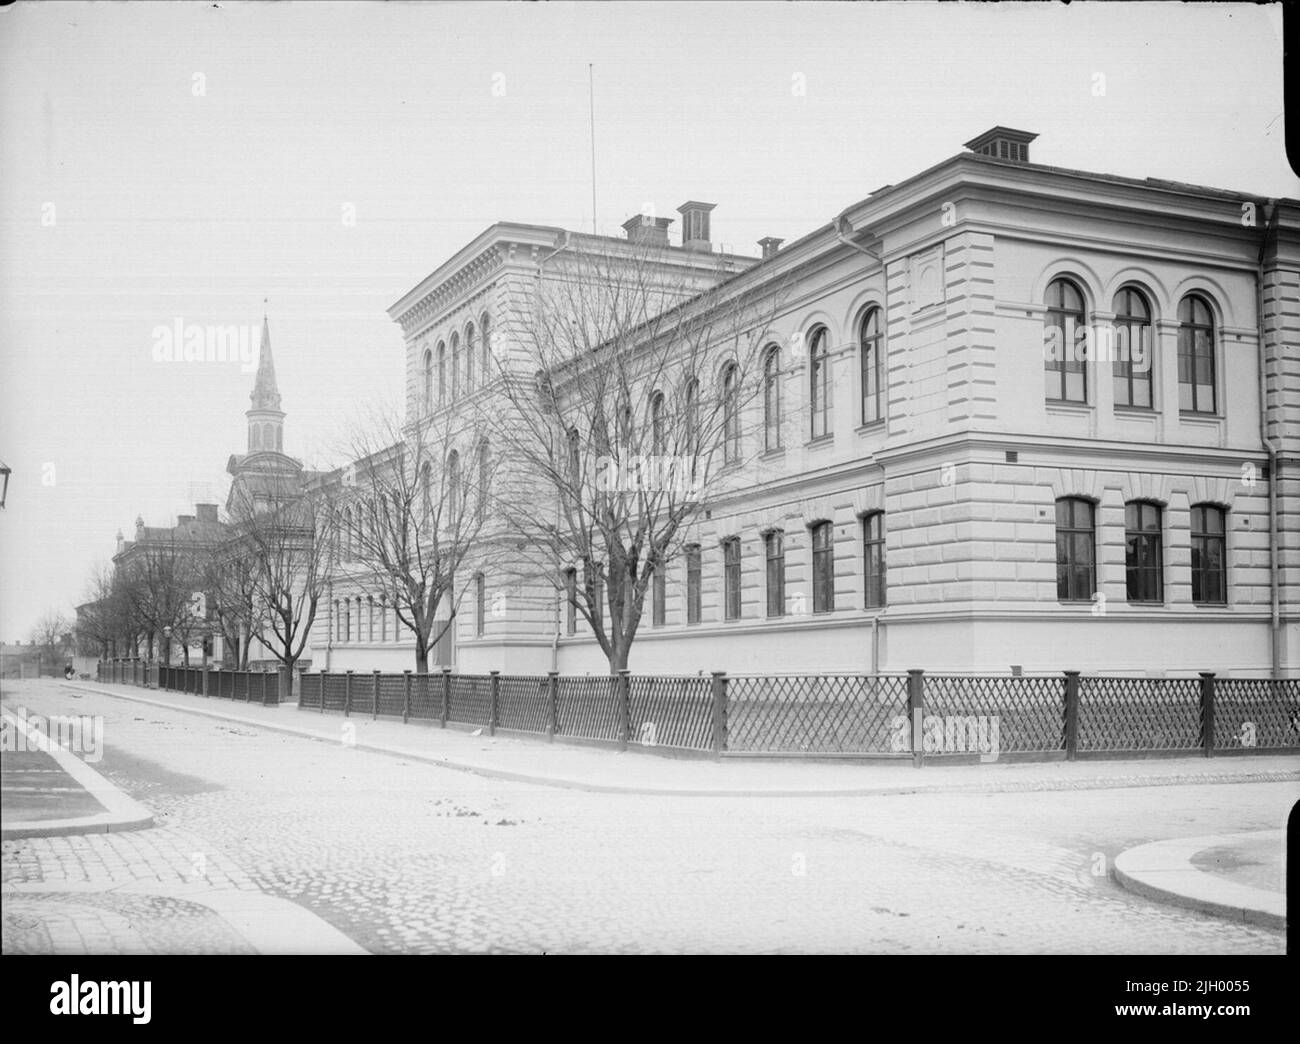 Kungsgatan au nord de Saint Olofsgatan, Dragarbrunn, Uppsala 1901 - 1902. Kungsgatan au nord de Järnbrogatan (St. Olofsgatan). Le bâtiment monumental de l'école primaire dans le quartier de Balder est érigé après les dessins de C A Kihlberg de 1883. C'est aujourd'hui le seul bâtiment conservé de l'école primaire d'Uppsala à partir de la fin de 1800s, lorsque le système de l'école primaire dans la ville a subi une forte rénovation. 'D'Ola Ehn & Gunnar Elfström, au tournant du siècle, les photos d'Uppsala i Dahlgren. Nature et culture 1977. Architecte: Kihlberg, Carl August Banque D'Images